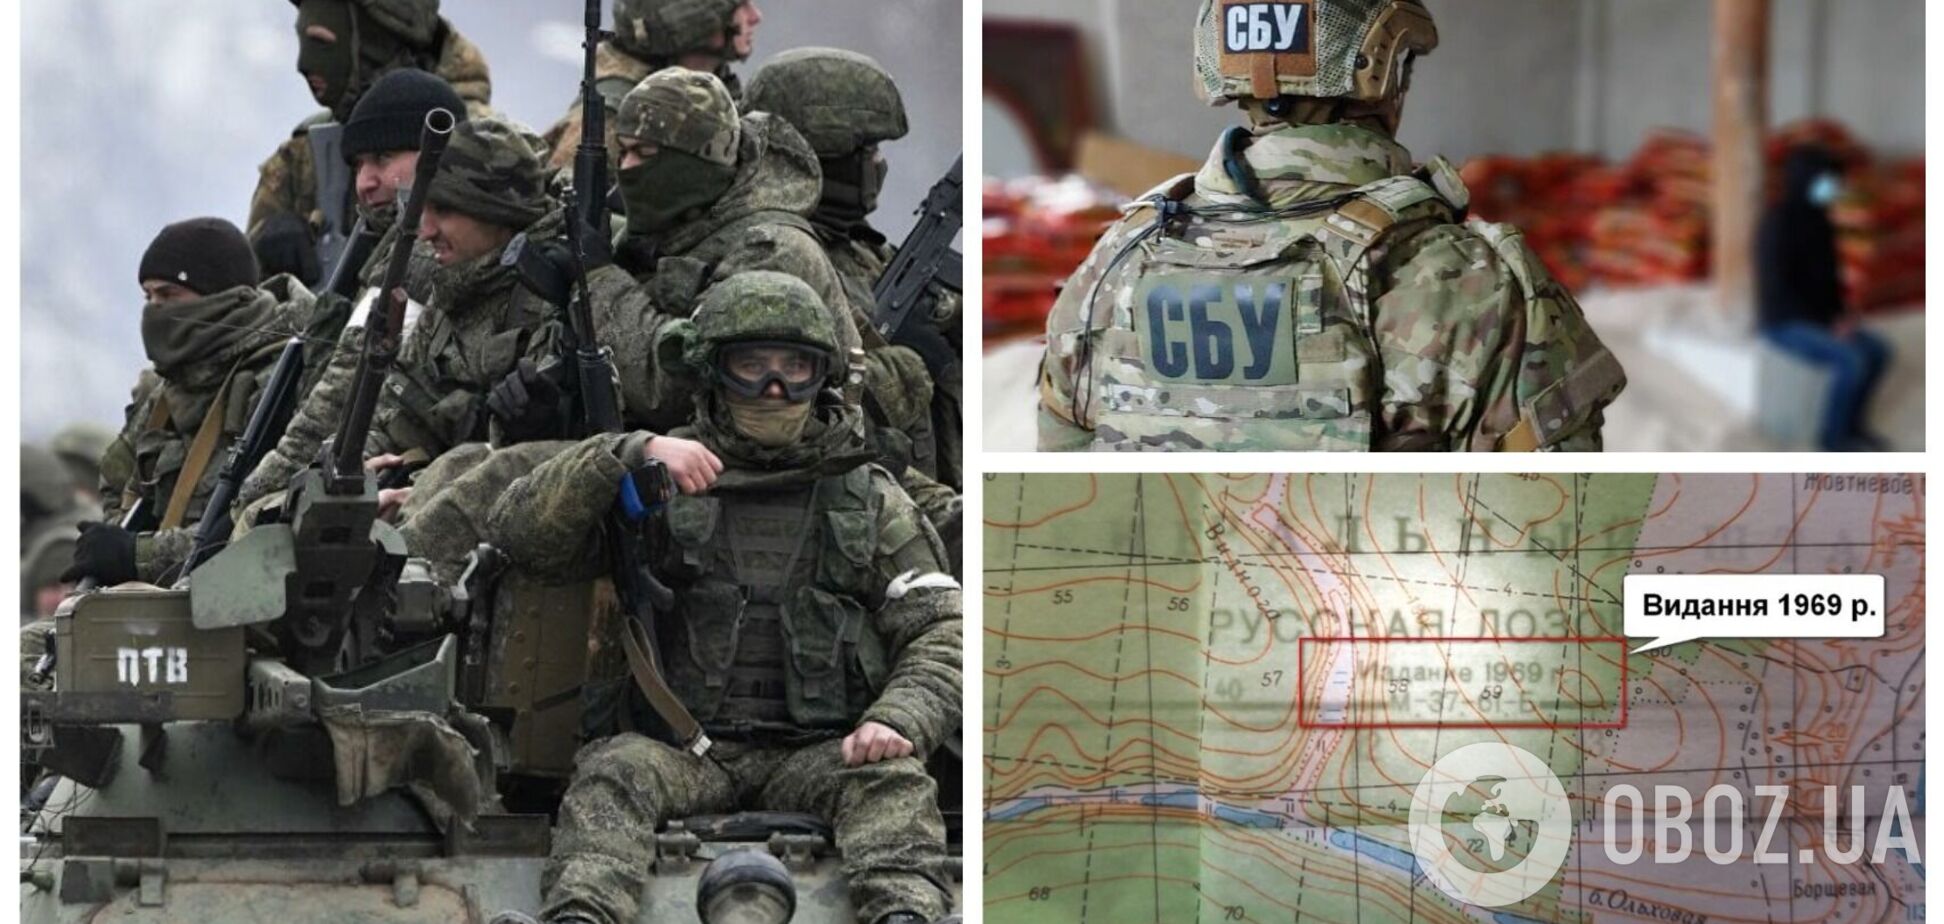 Российские военные вторглись в Украину, руководствуясь картами прошлого века: в СБУ предъявили доказательства. Фото